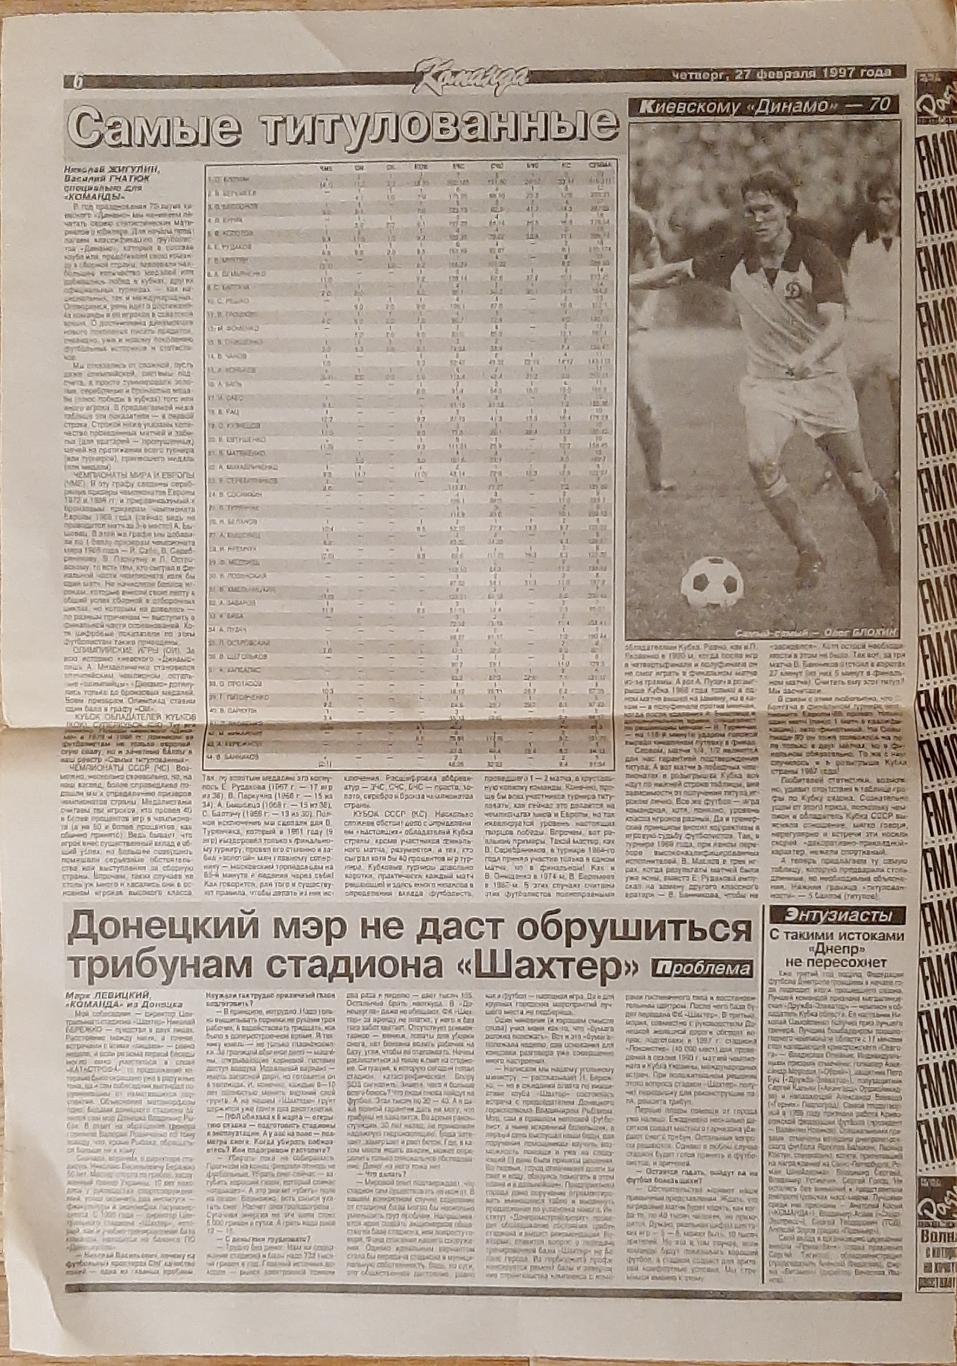 Вирізка з газети Команда (27.02.1997) Динамо Київ: самі титуловані гравці